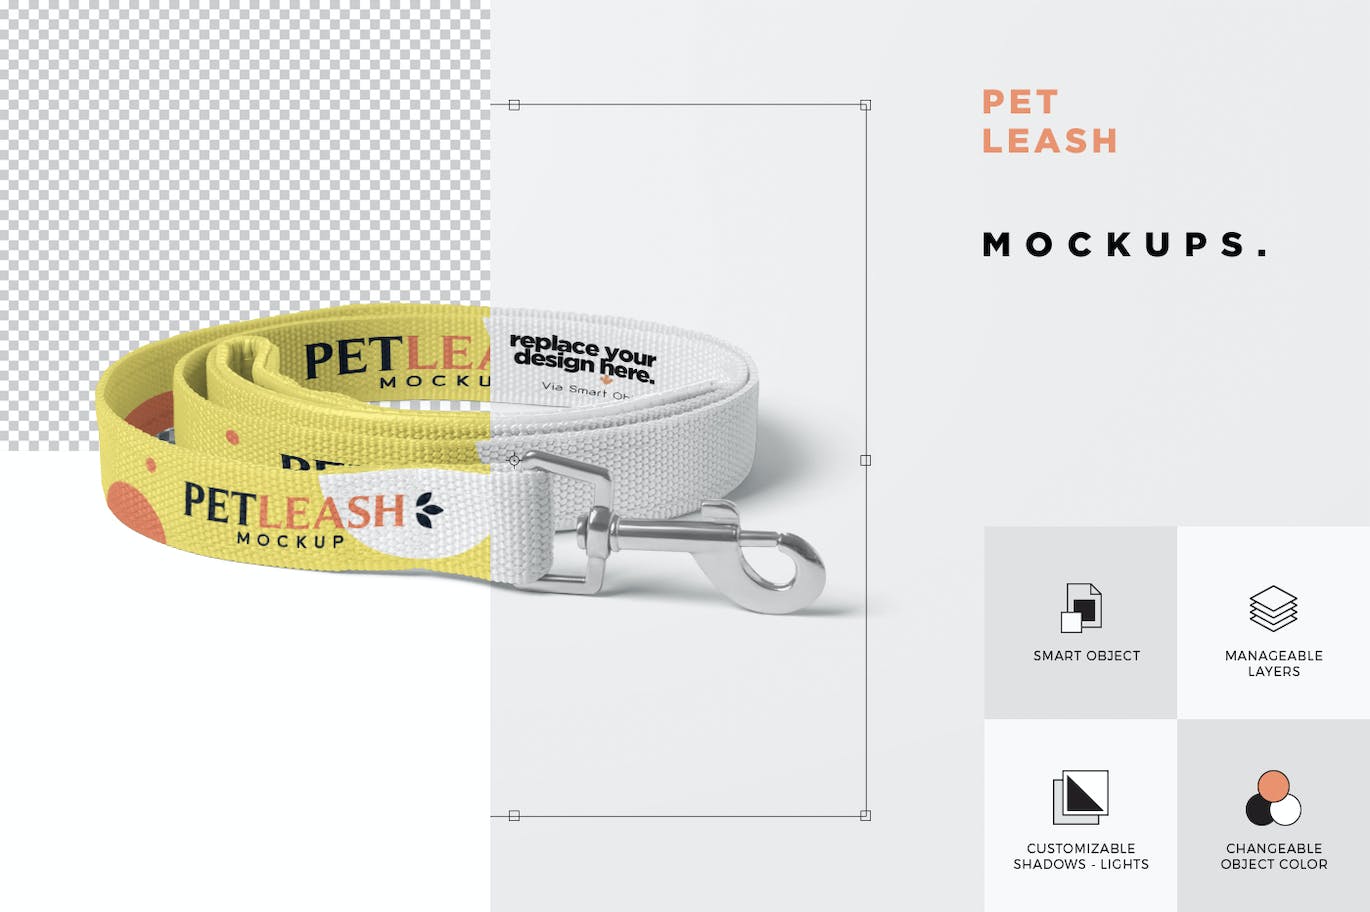 宠物皮带牵引绳设计样机 Pet Leash Mockups 样机素材 第4张